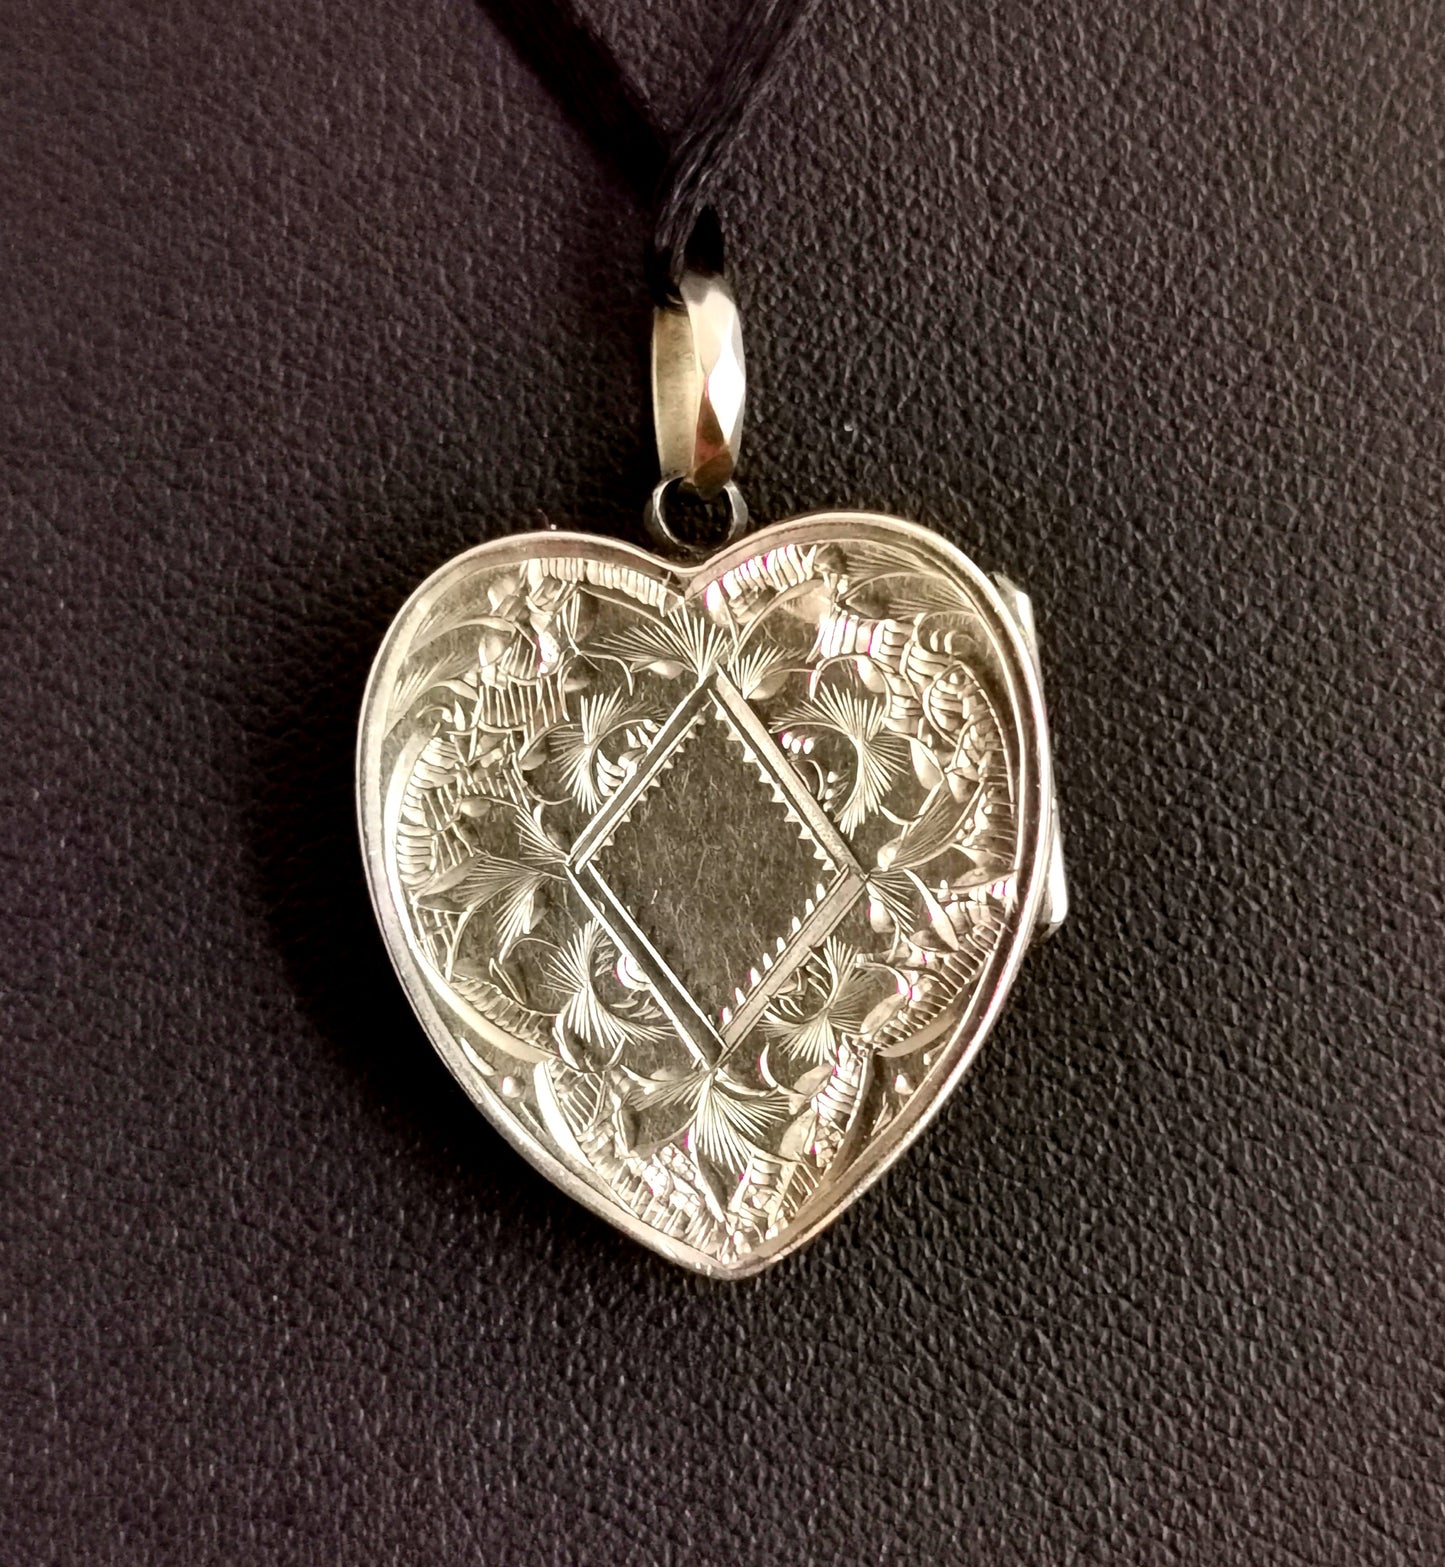 Art Deco 9ct gold heart locket, faux Carnelian, pendant